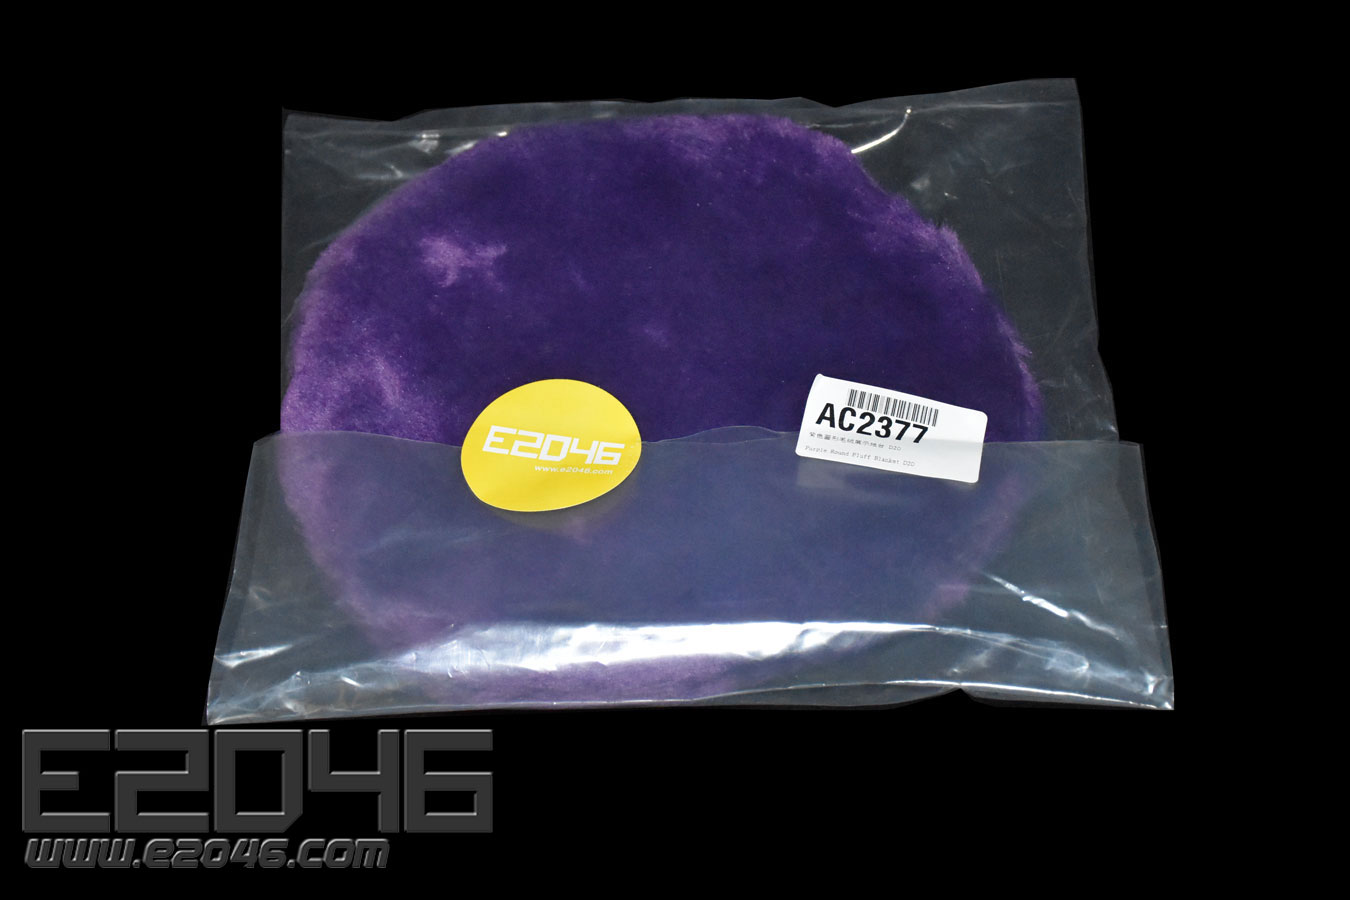 D20 Purple Round Fluff Blanket